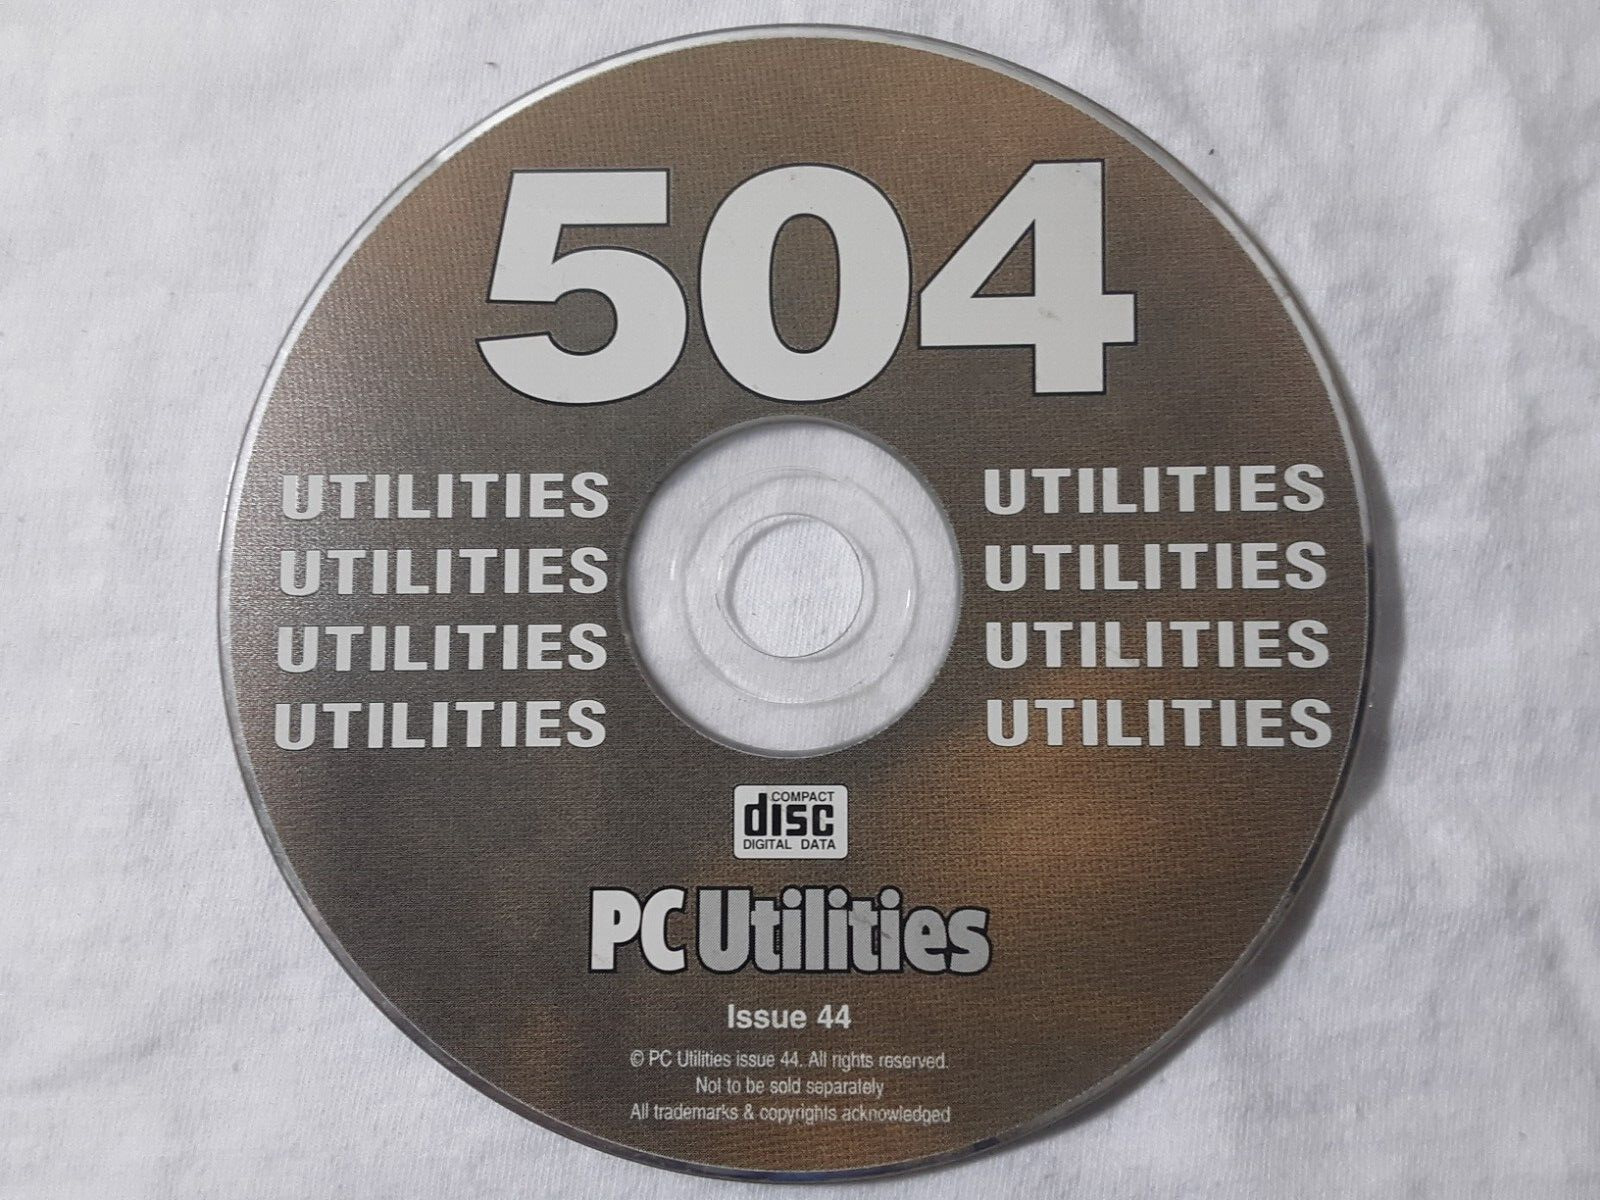 retro 2003 CD-Rom PC Utilities #44 - 504 Utilities  rare vintage